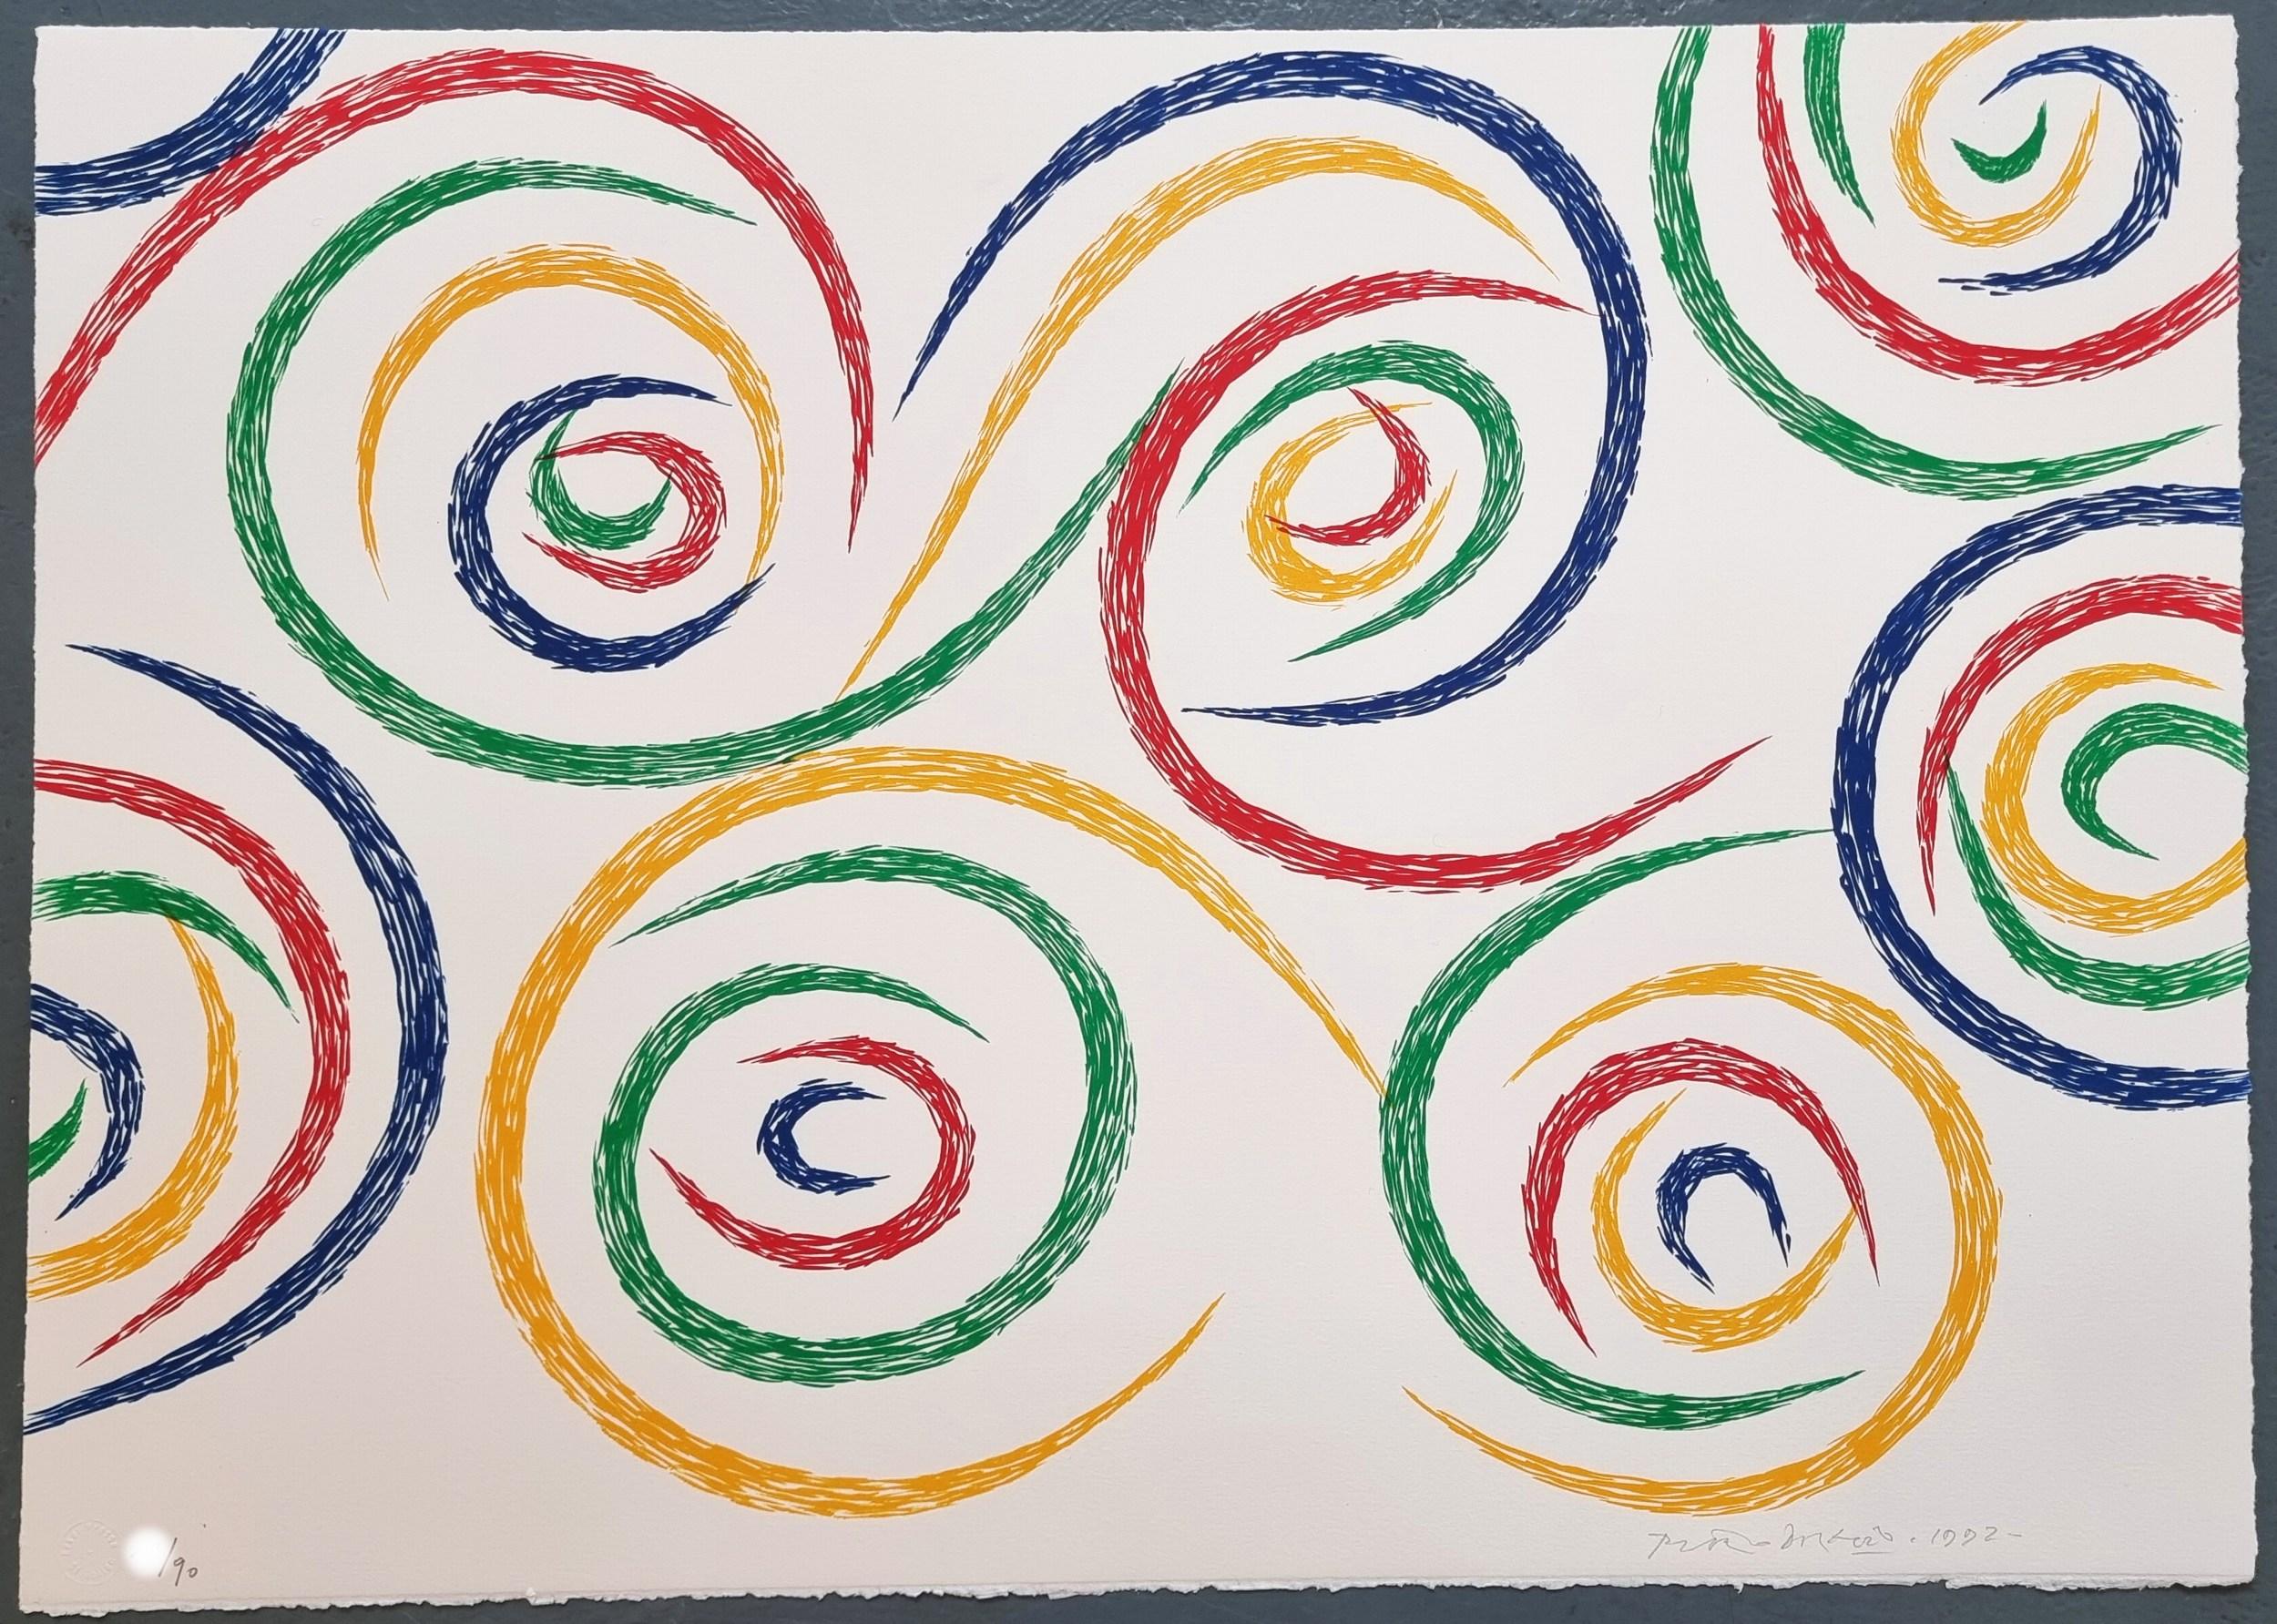 Lot de 2 lithographies - Cercles de nuit et cercles du matin (abstraction lyrique) - Colorfield Print par Piero Dorazio